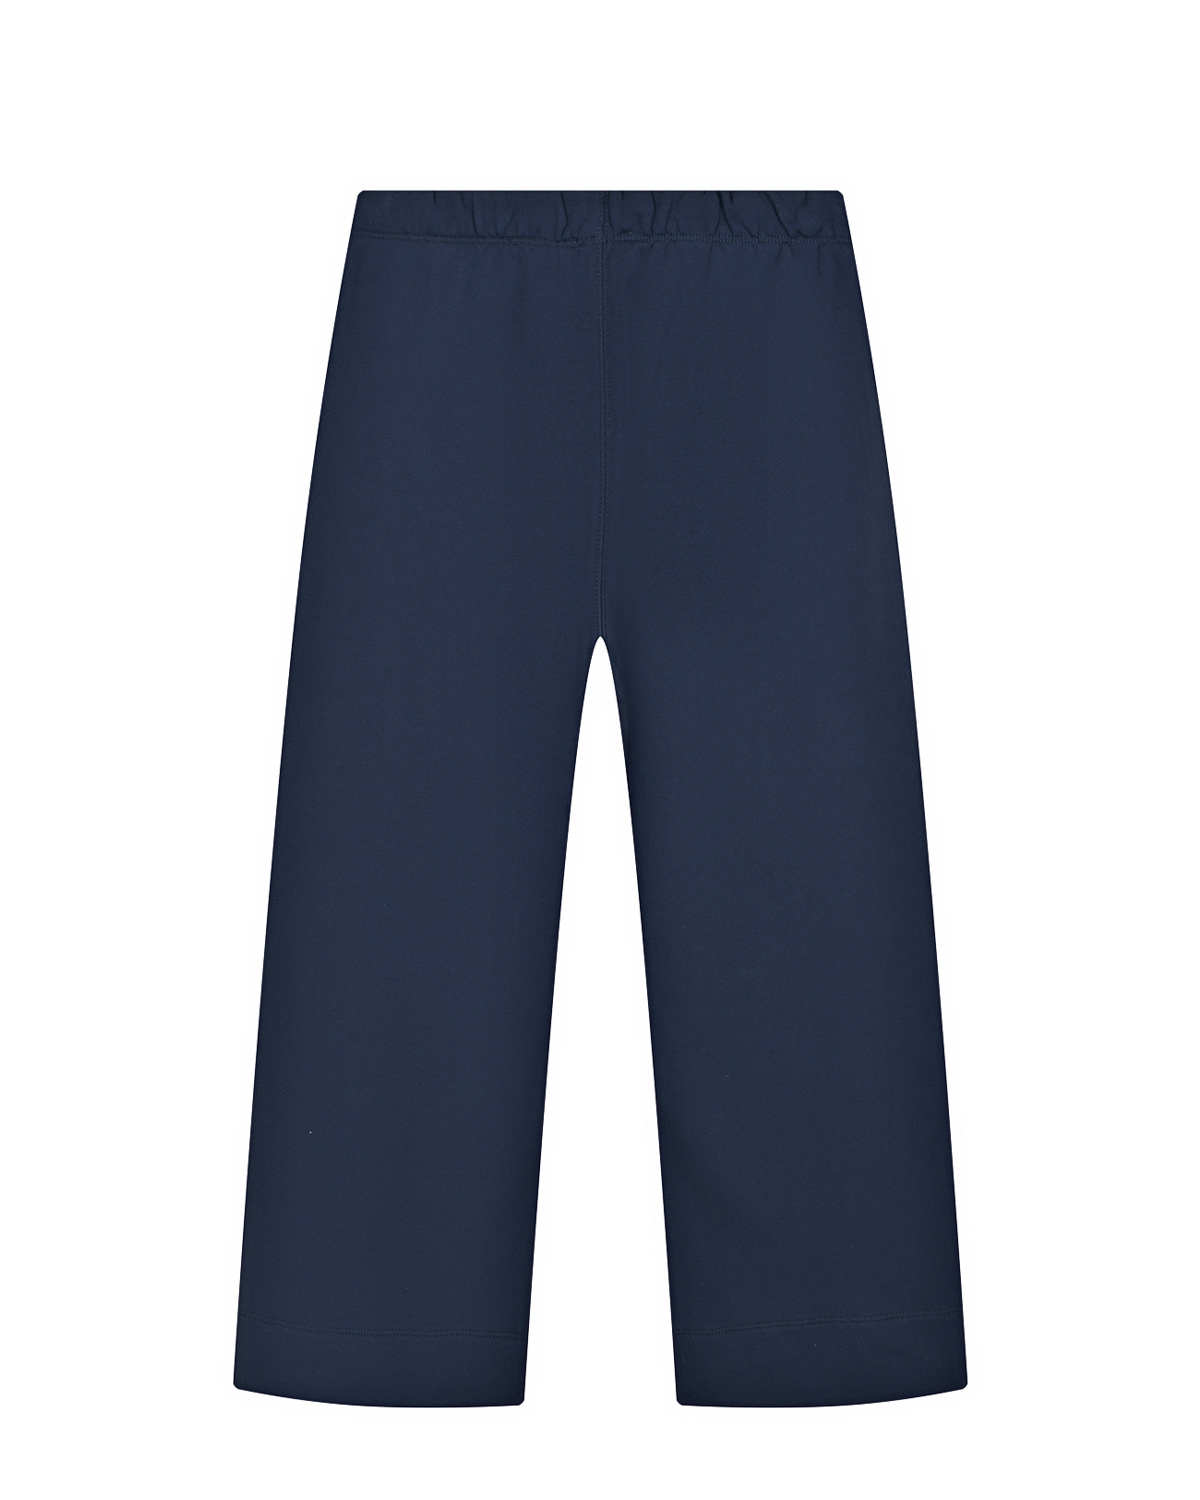 Широкие спортивные брюки No. 21 детские, размер 152, цвет синий - фото 2